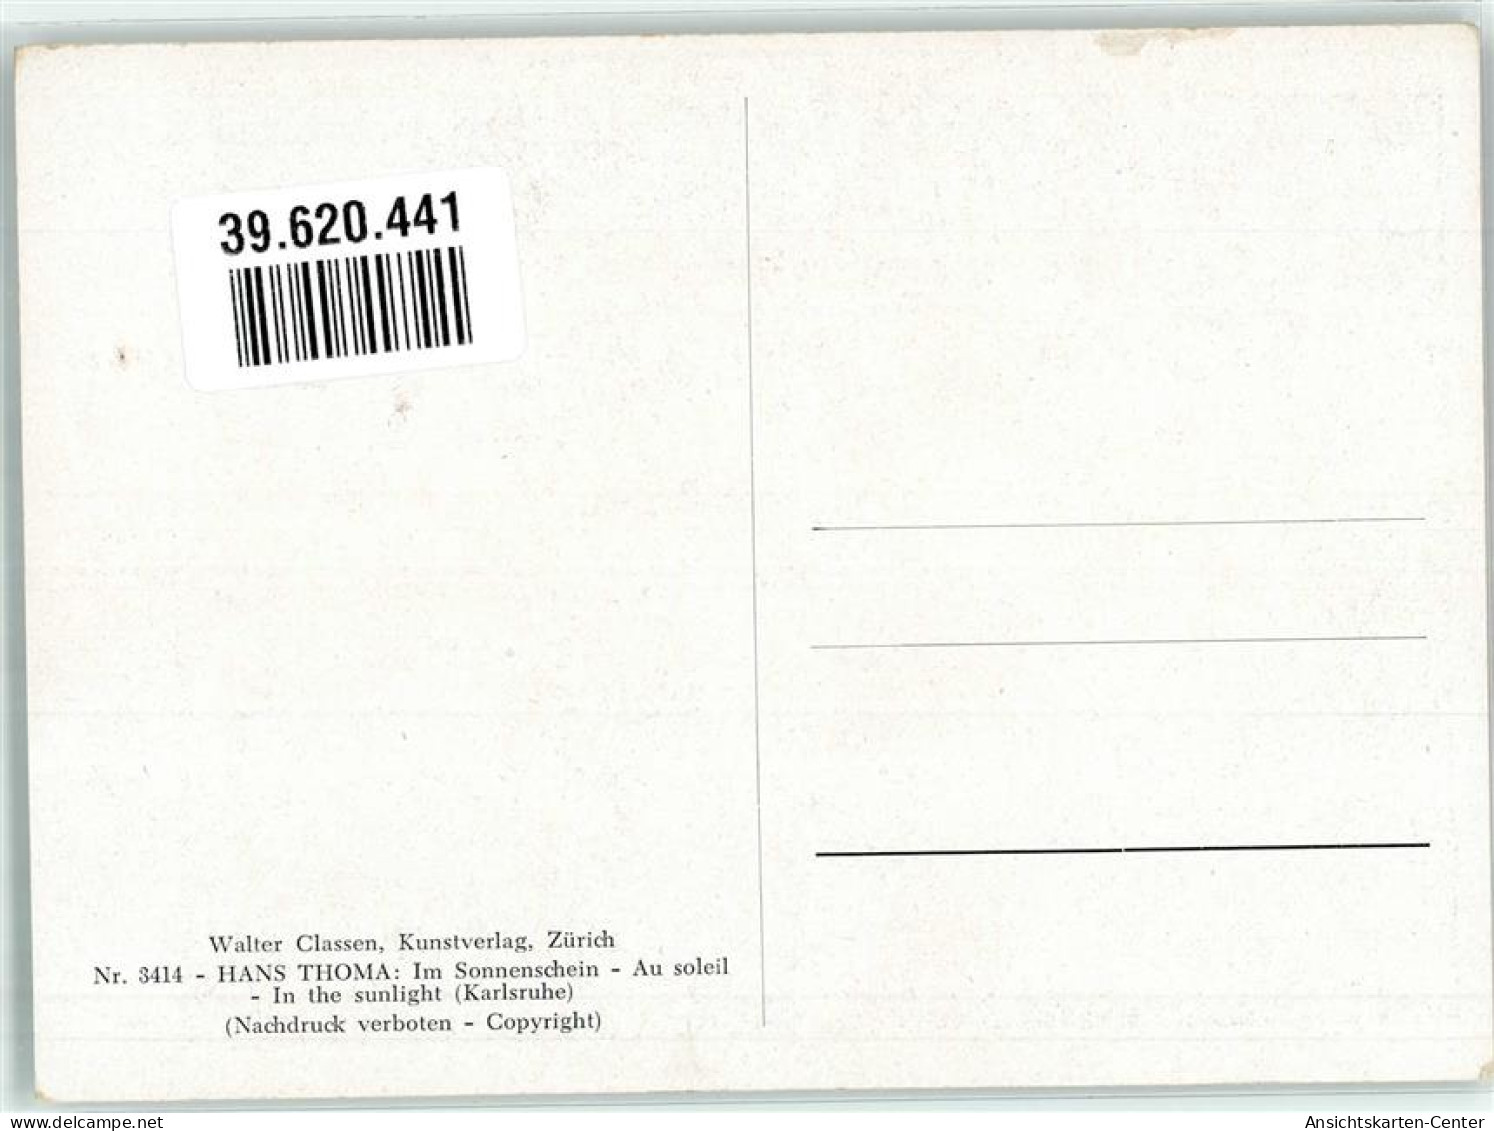 39620441 - Im Sonnenschein Frau Walter Classen Kunstverlag Nr. 3414 - Thoma, Hans